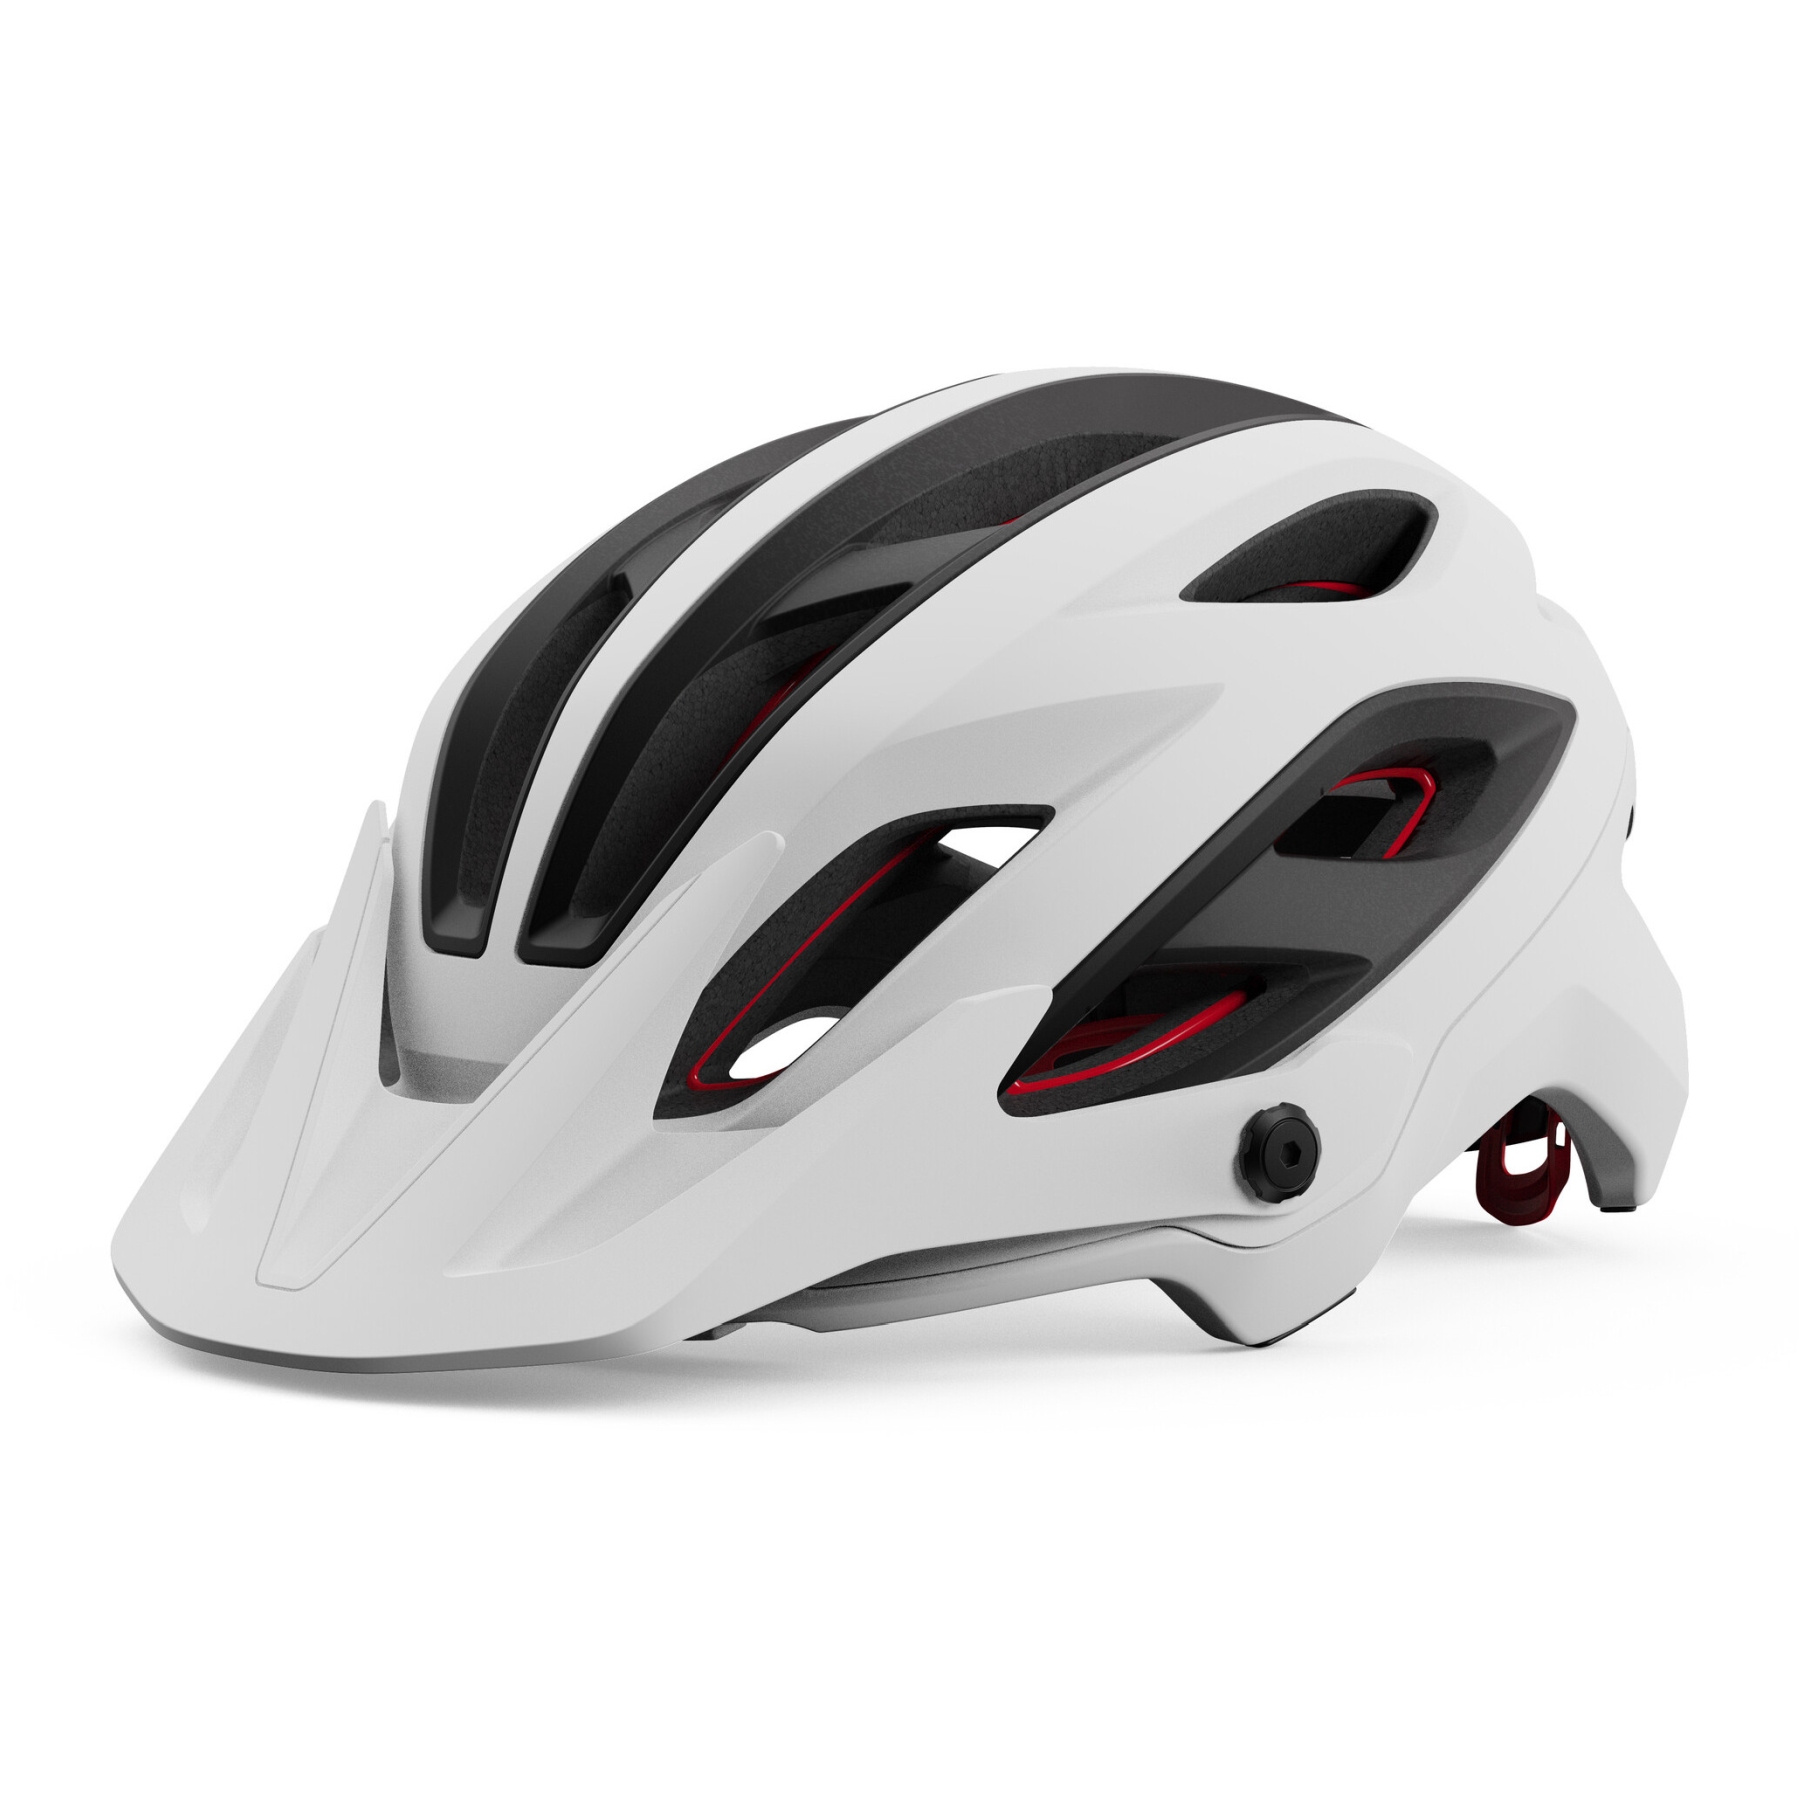 Produktbild von Giro Merit Spherical MTB Helm - matte white/black